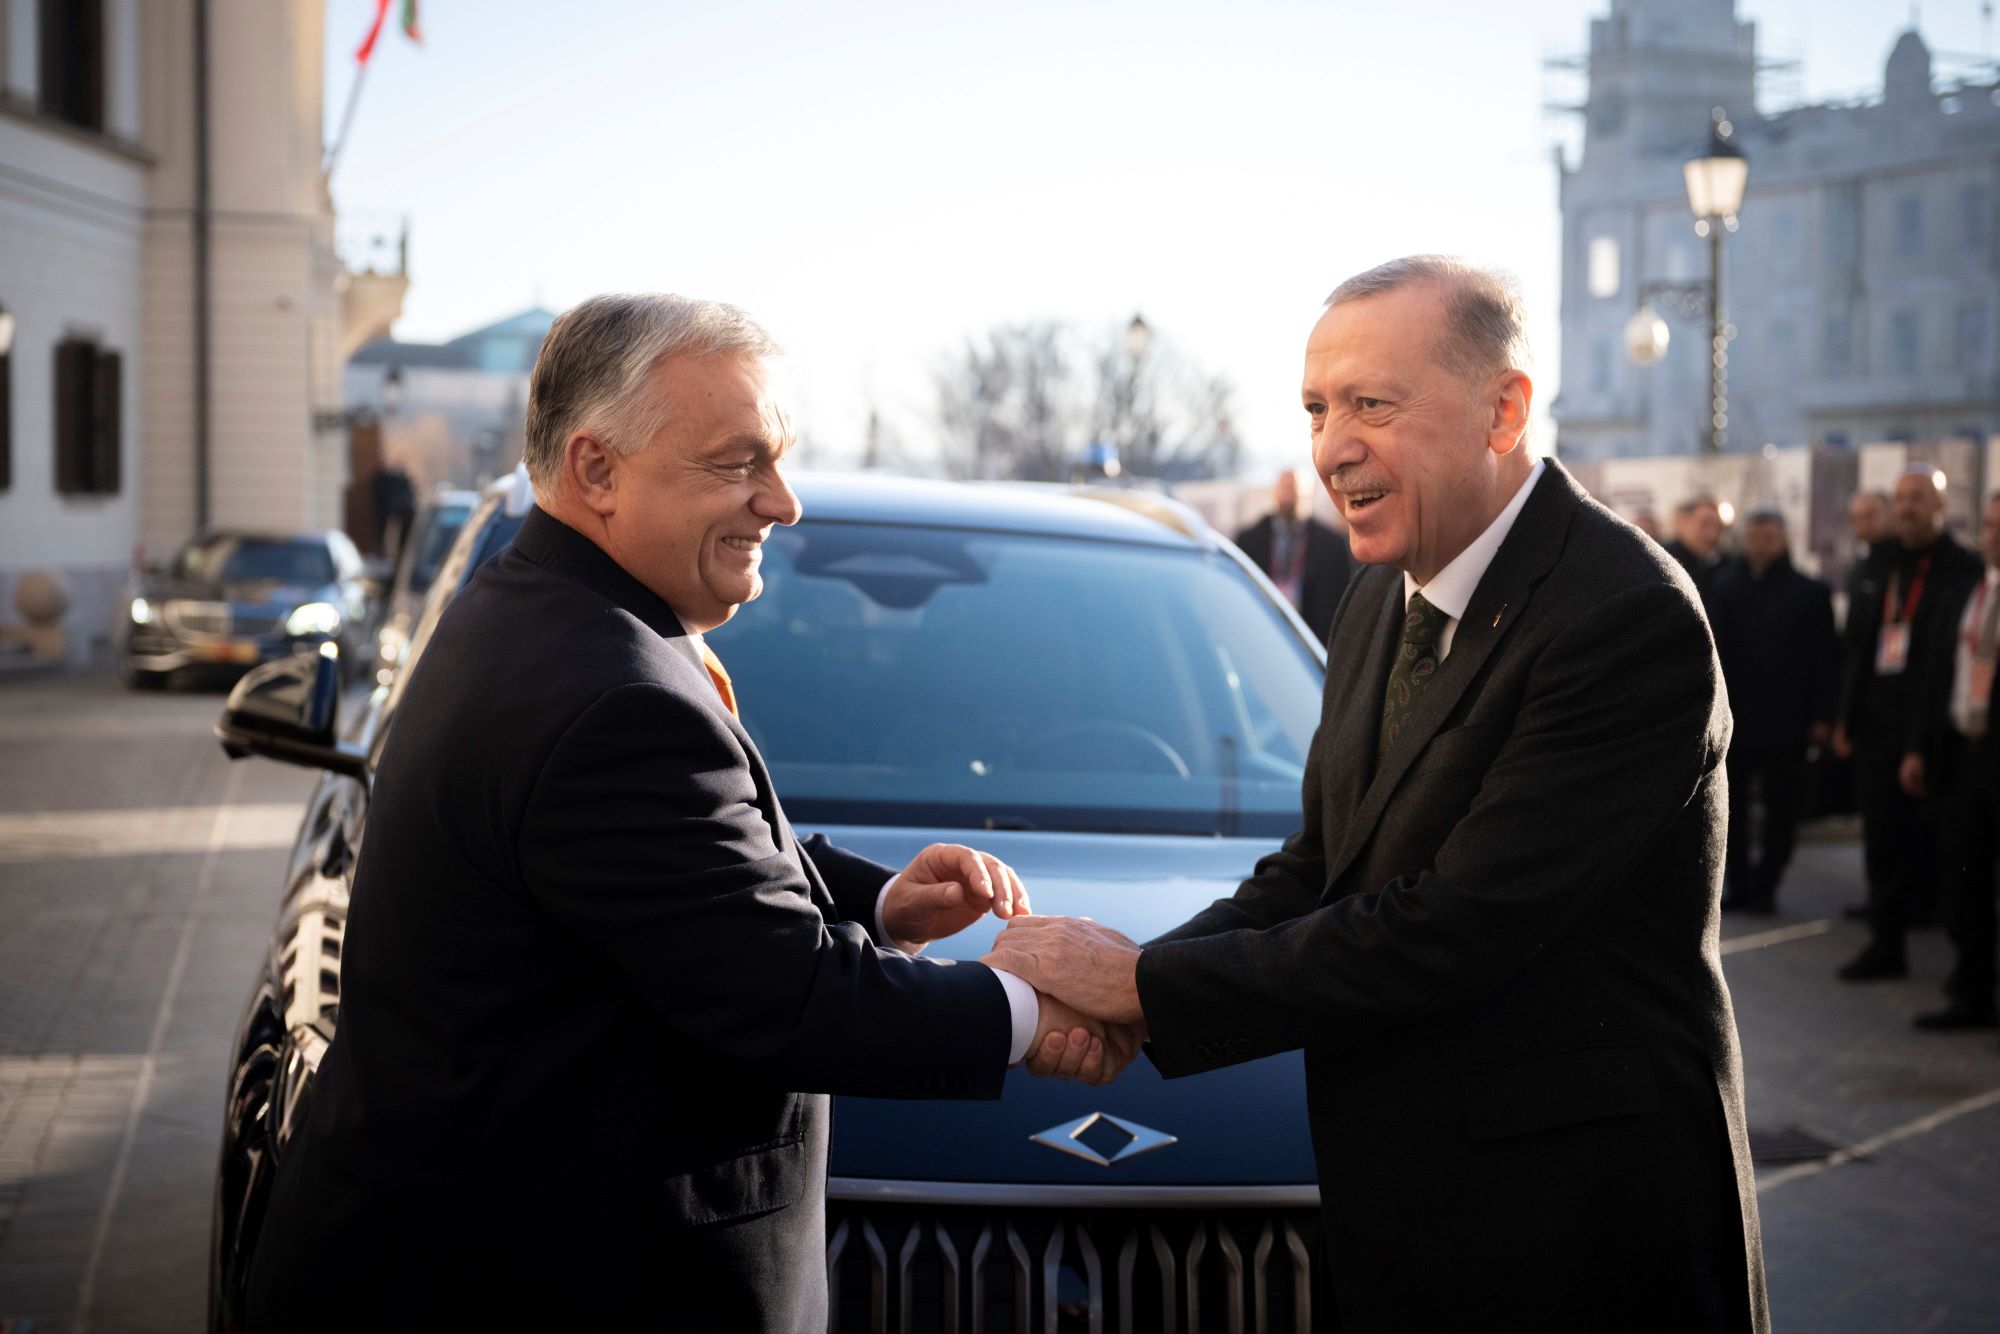 Orbán Viktor: a törökök és a magyarok együtt lesznek győztesek a 21. században